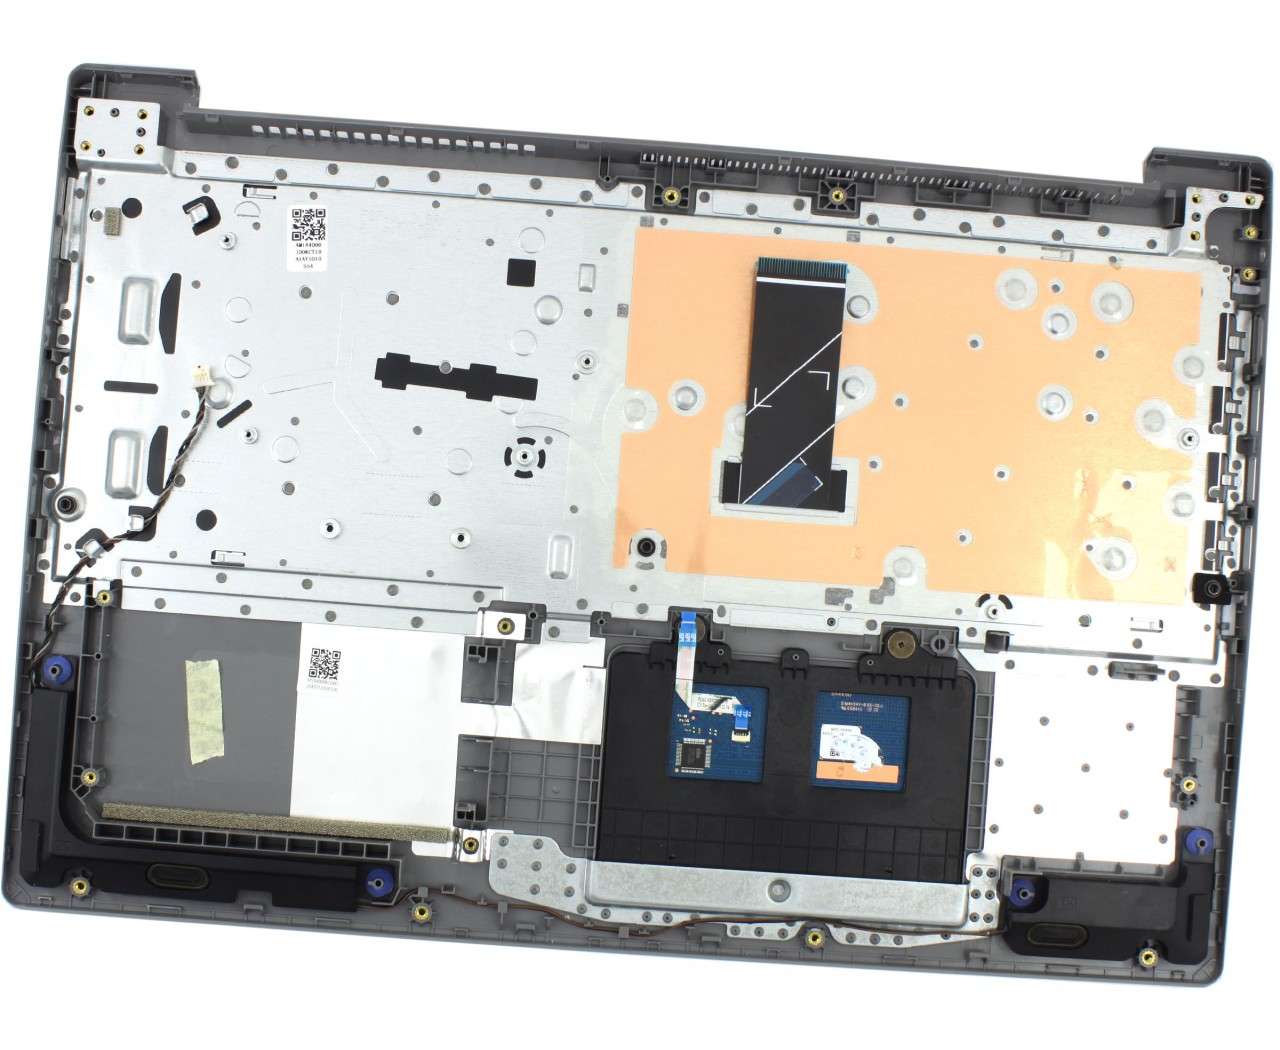 Tastatura Lenovo IdeaPad S145-15IGM Gri cu Palmrest Argintiu si TouchPad iluminata backlit image10